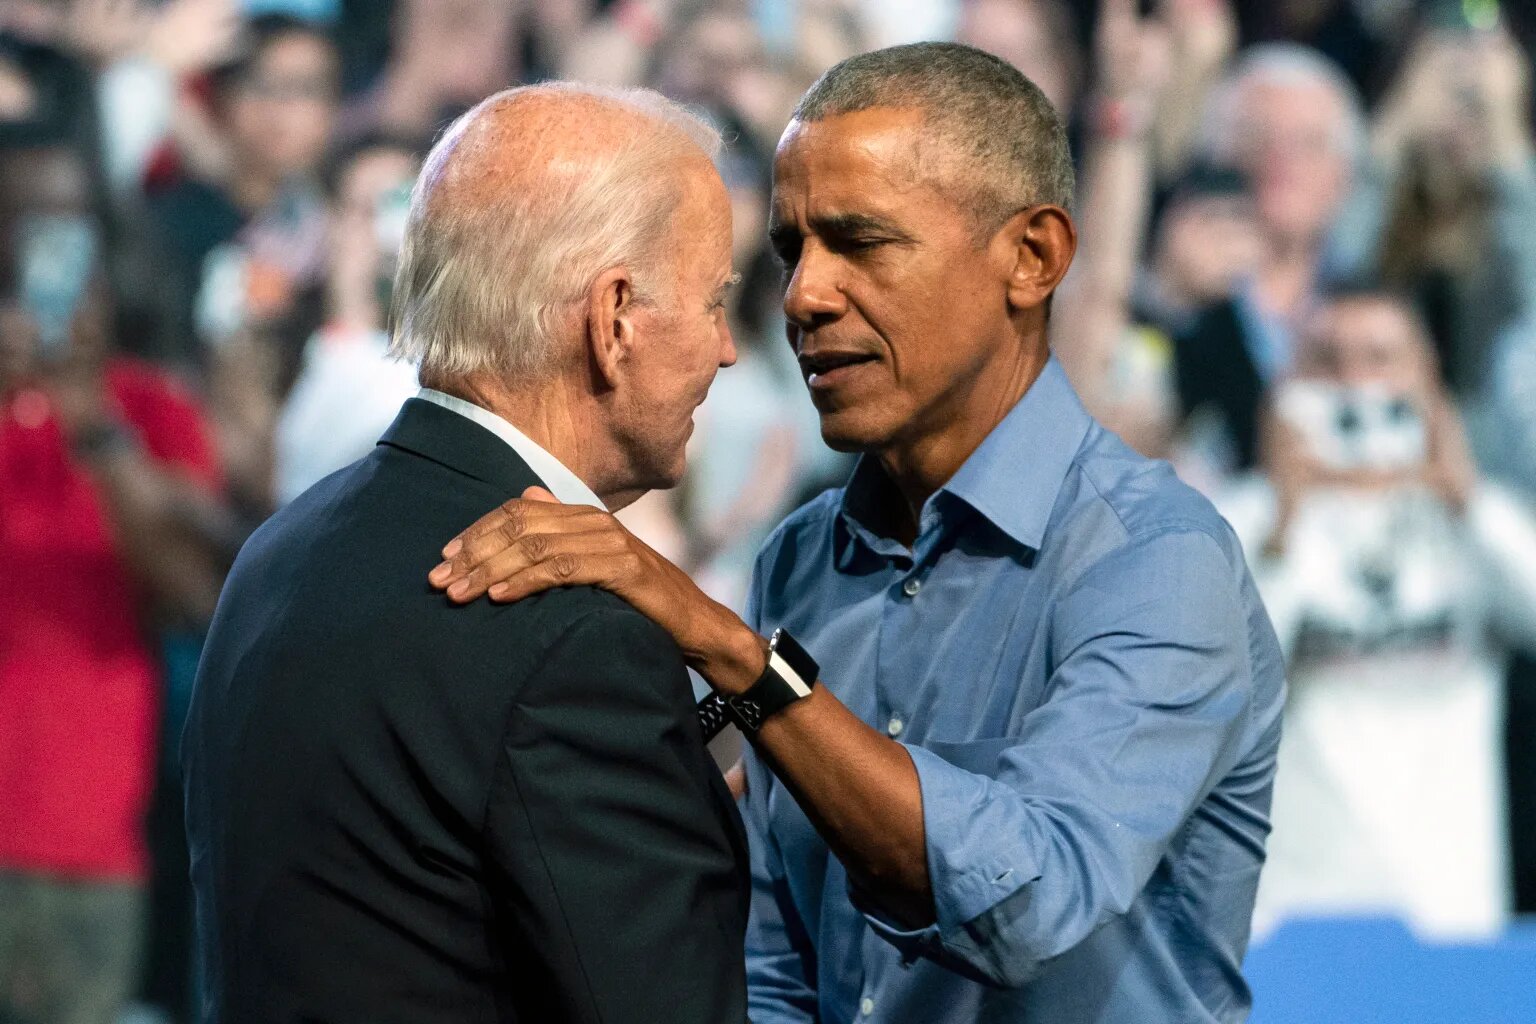 Barack Obama cree que Joe Biden debe reconsiderar su candidatura presidencial